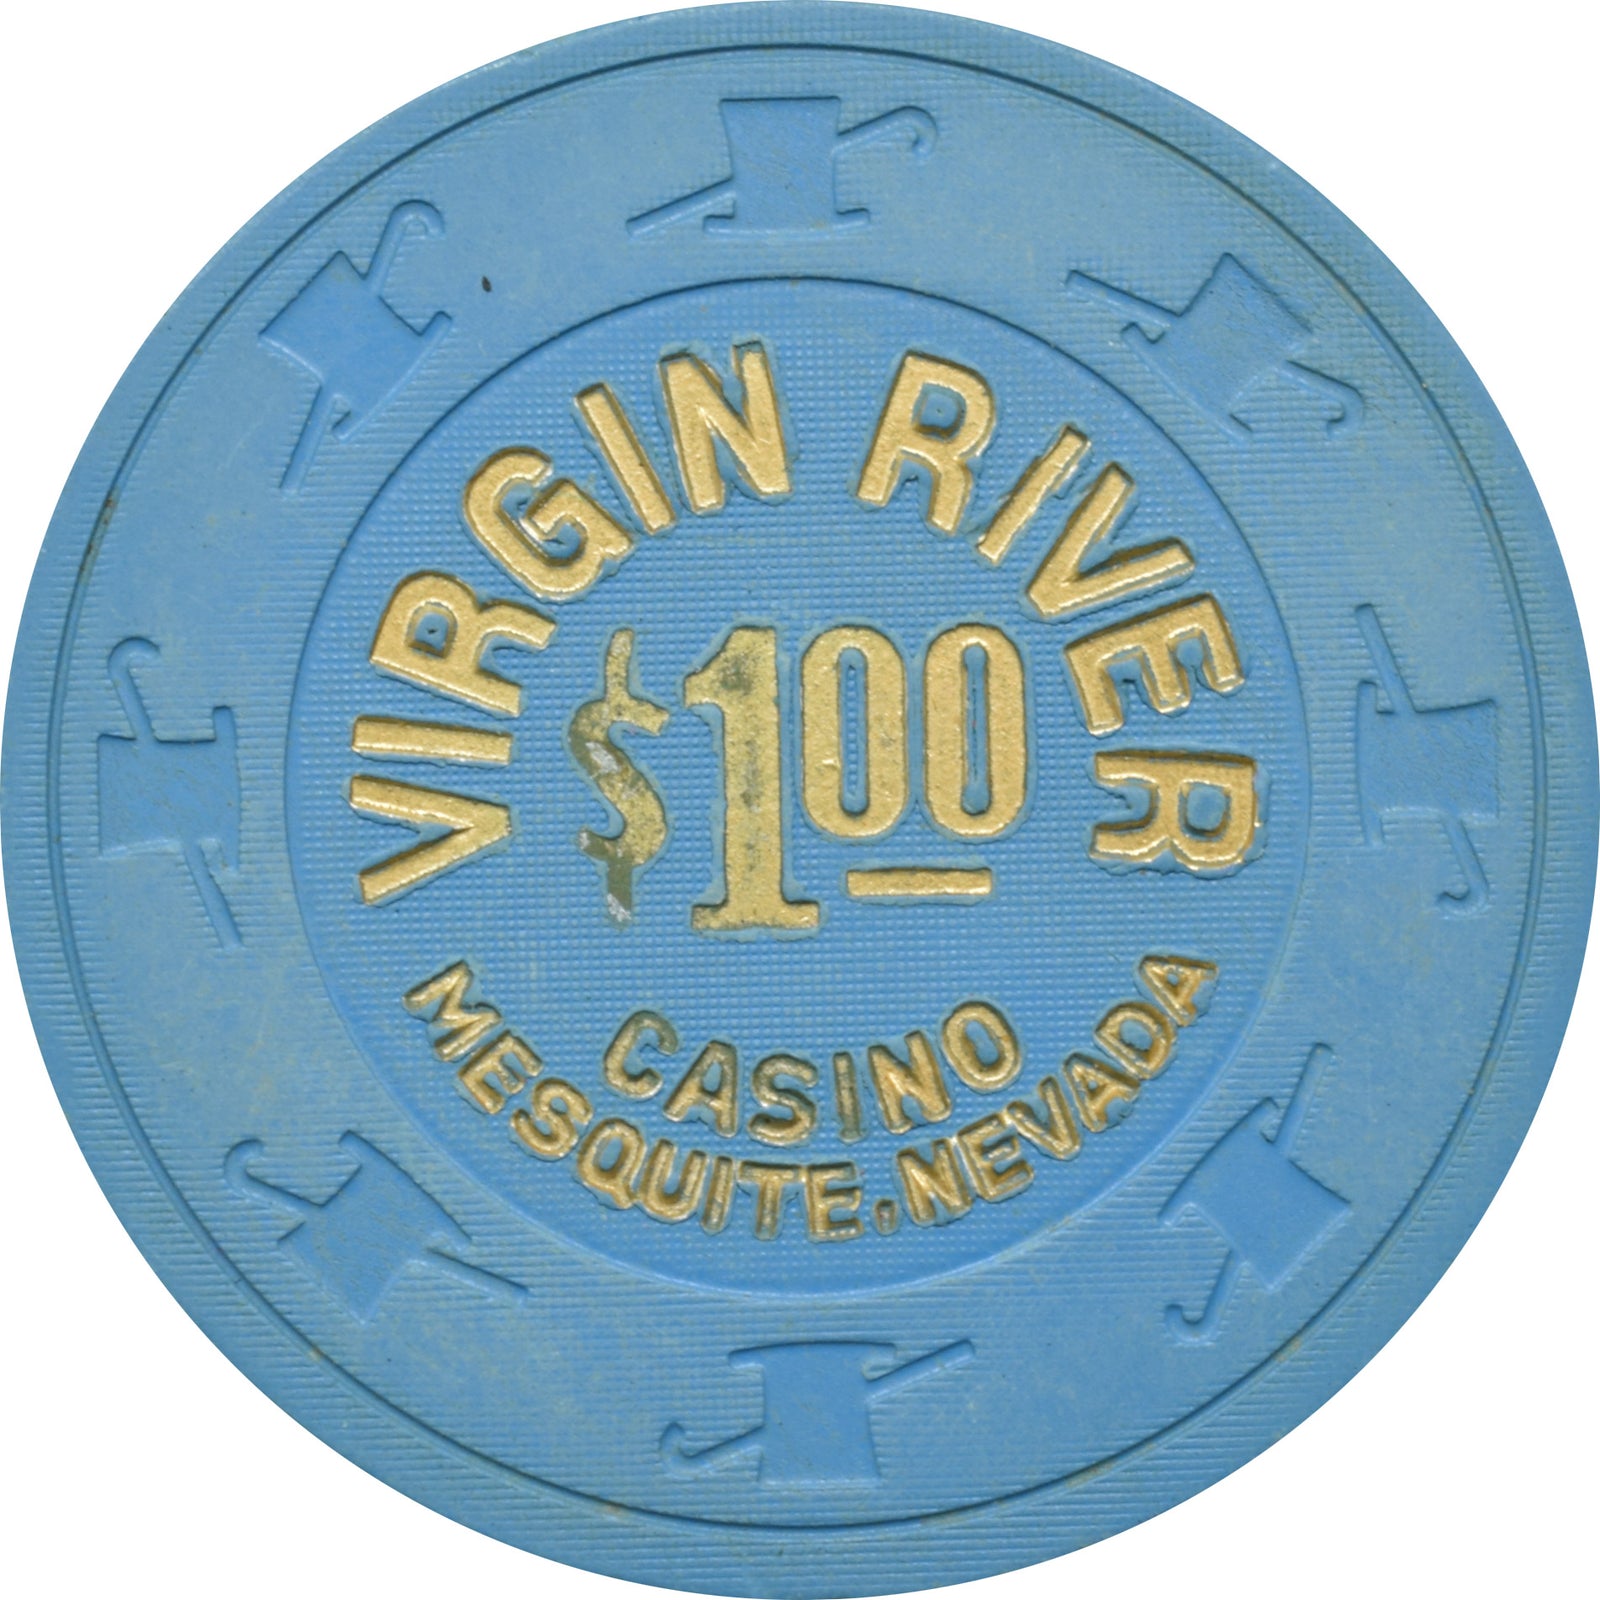 virgin river casino rv parking